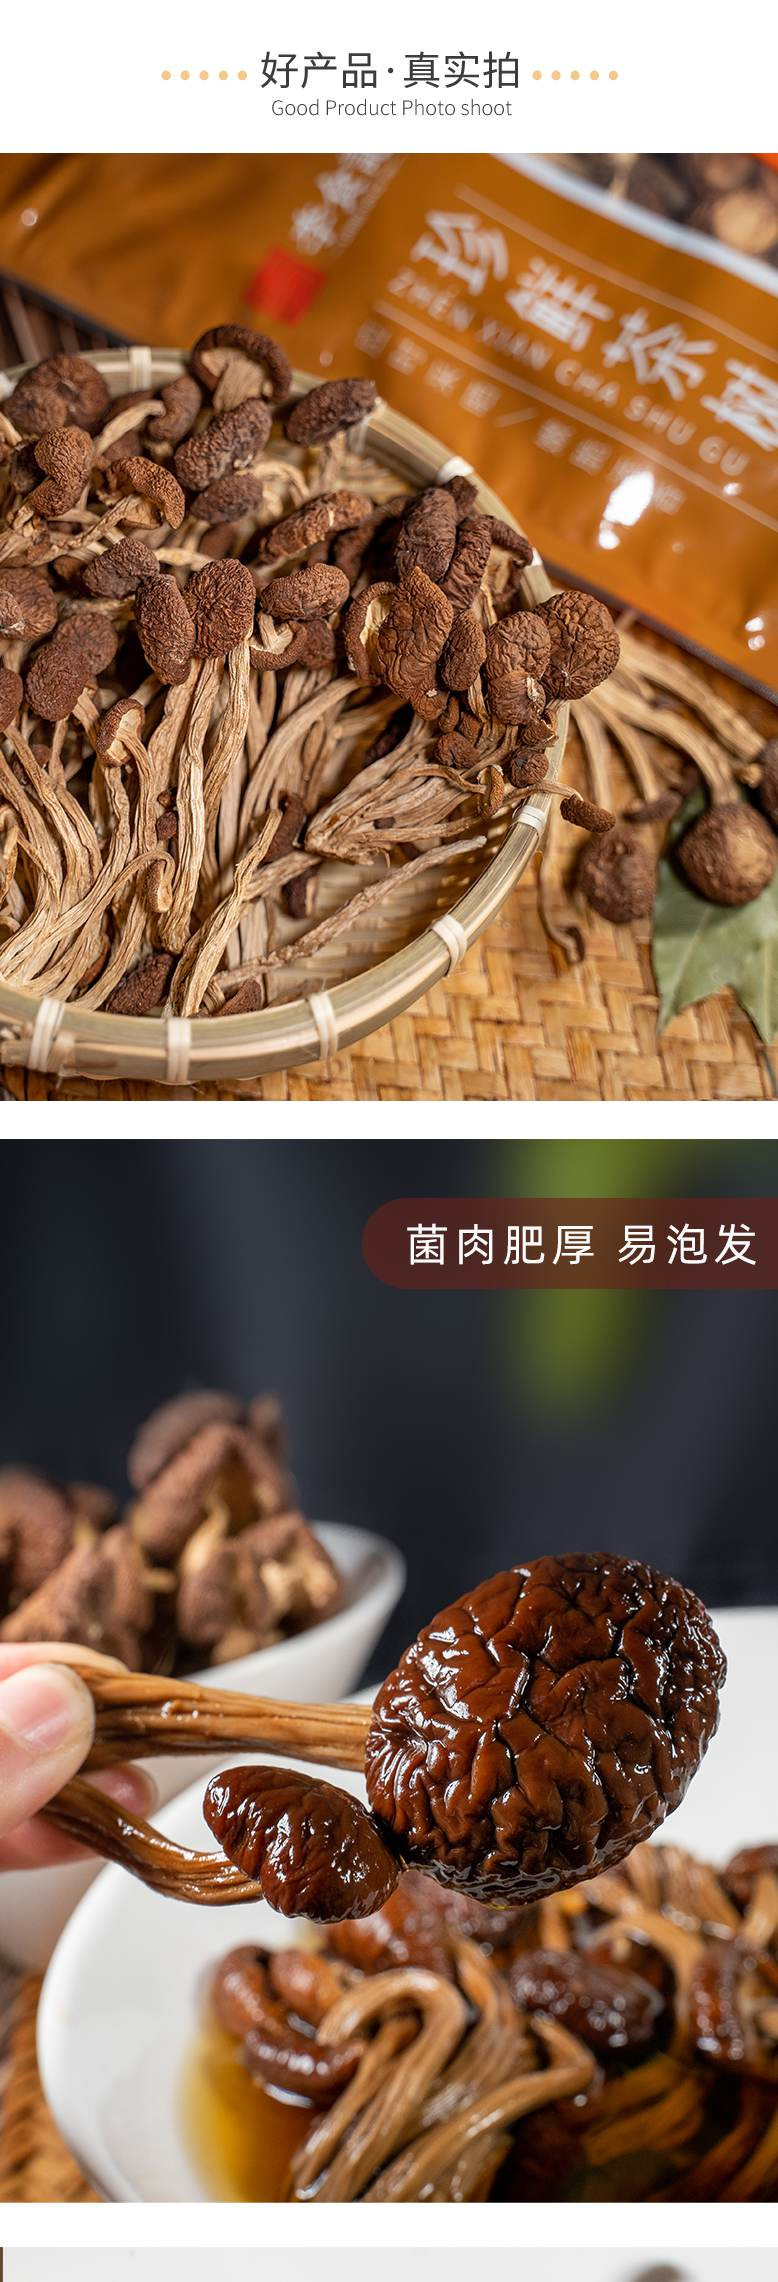 李食记 【福建莆田】 茶树菇252g 菇柄脆嫩 味道鲜美 气味清香